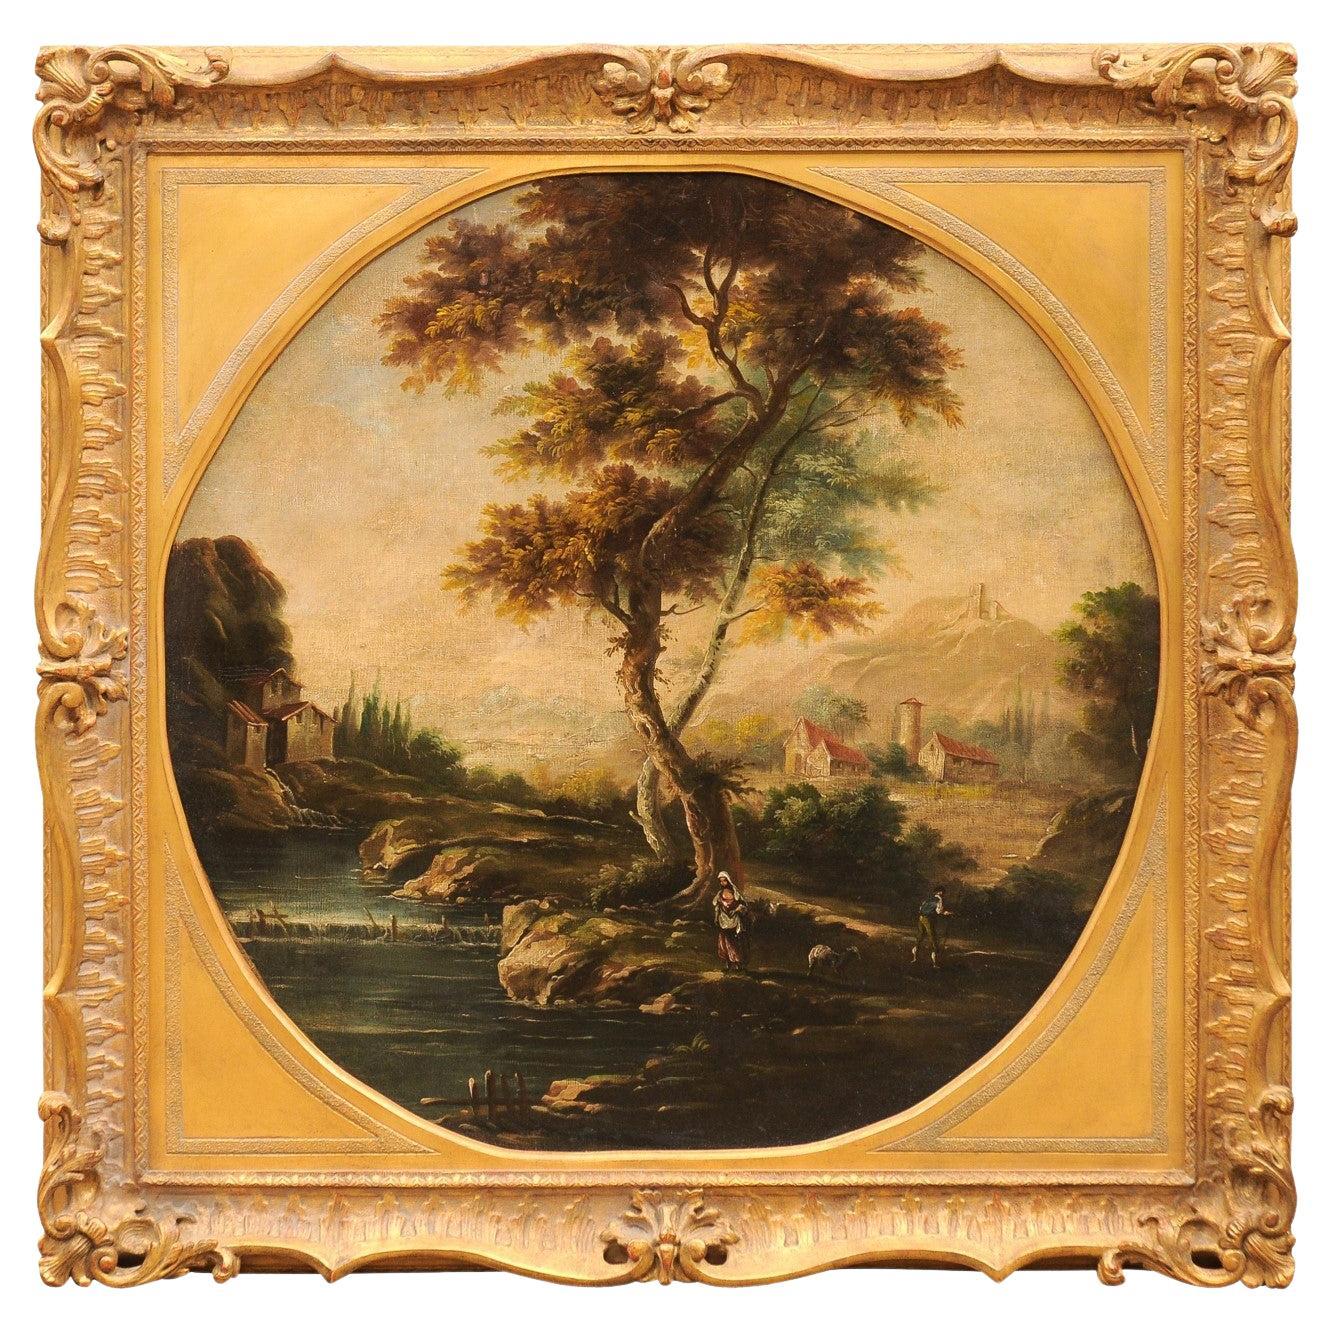 Grande peinture à l'huile sur toile anglaise du 19ème siècle représentant un paysage, dans un cadre doré